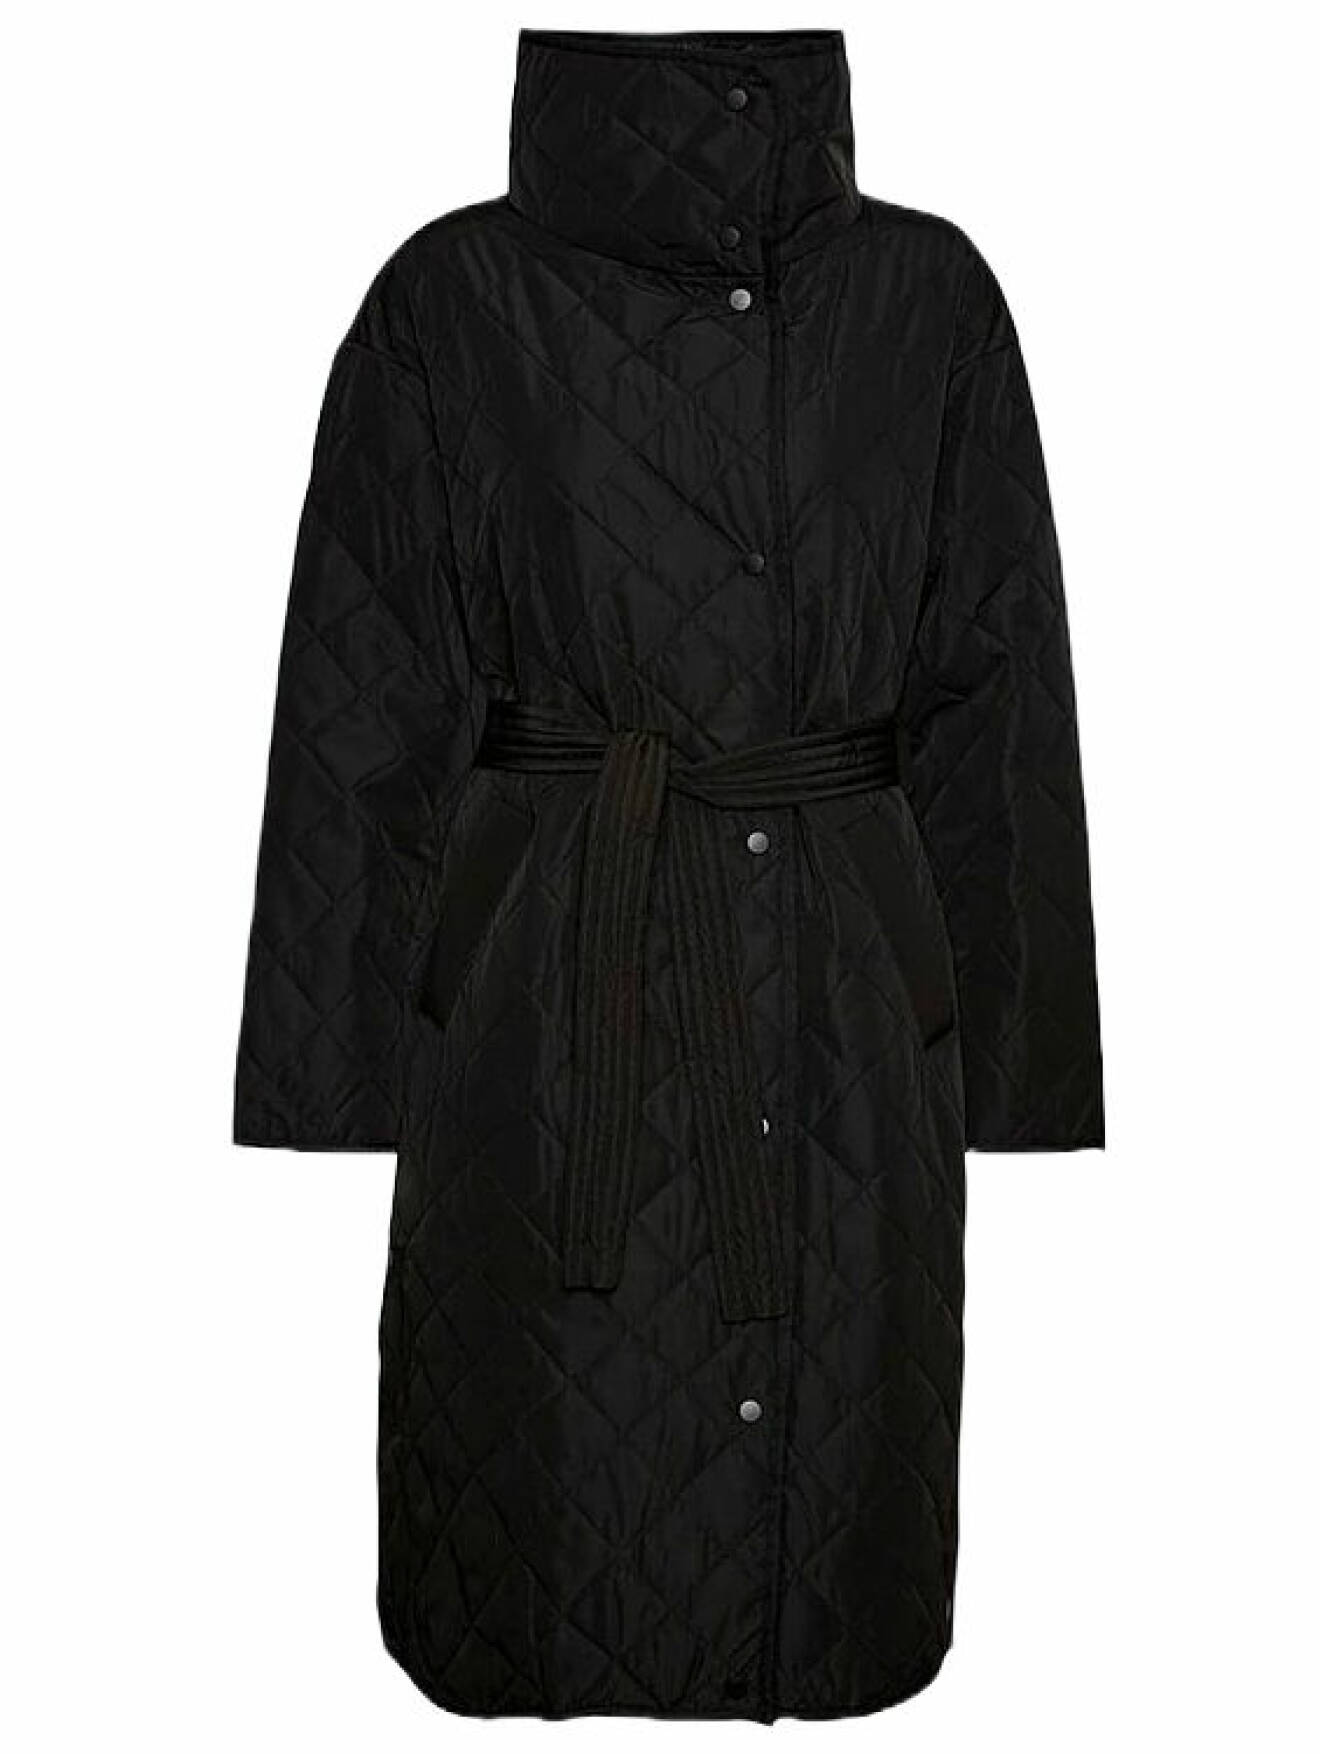 svart quiltad jacka från Vero moda